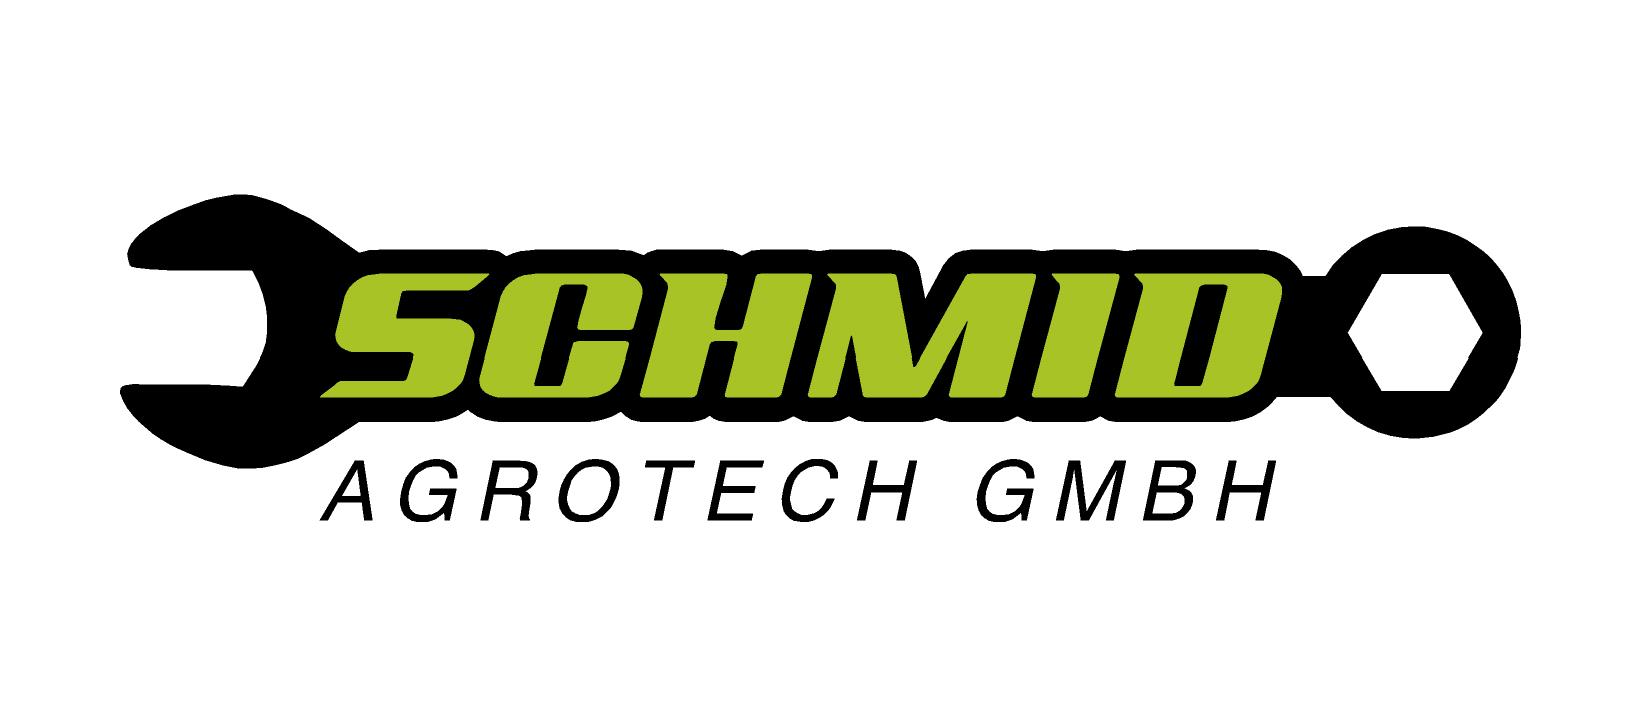 Schmid Agrotech GmbH